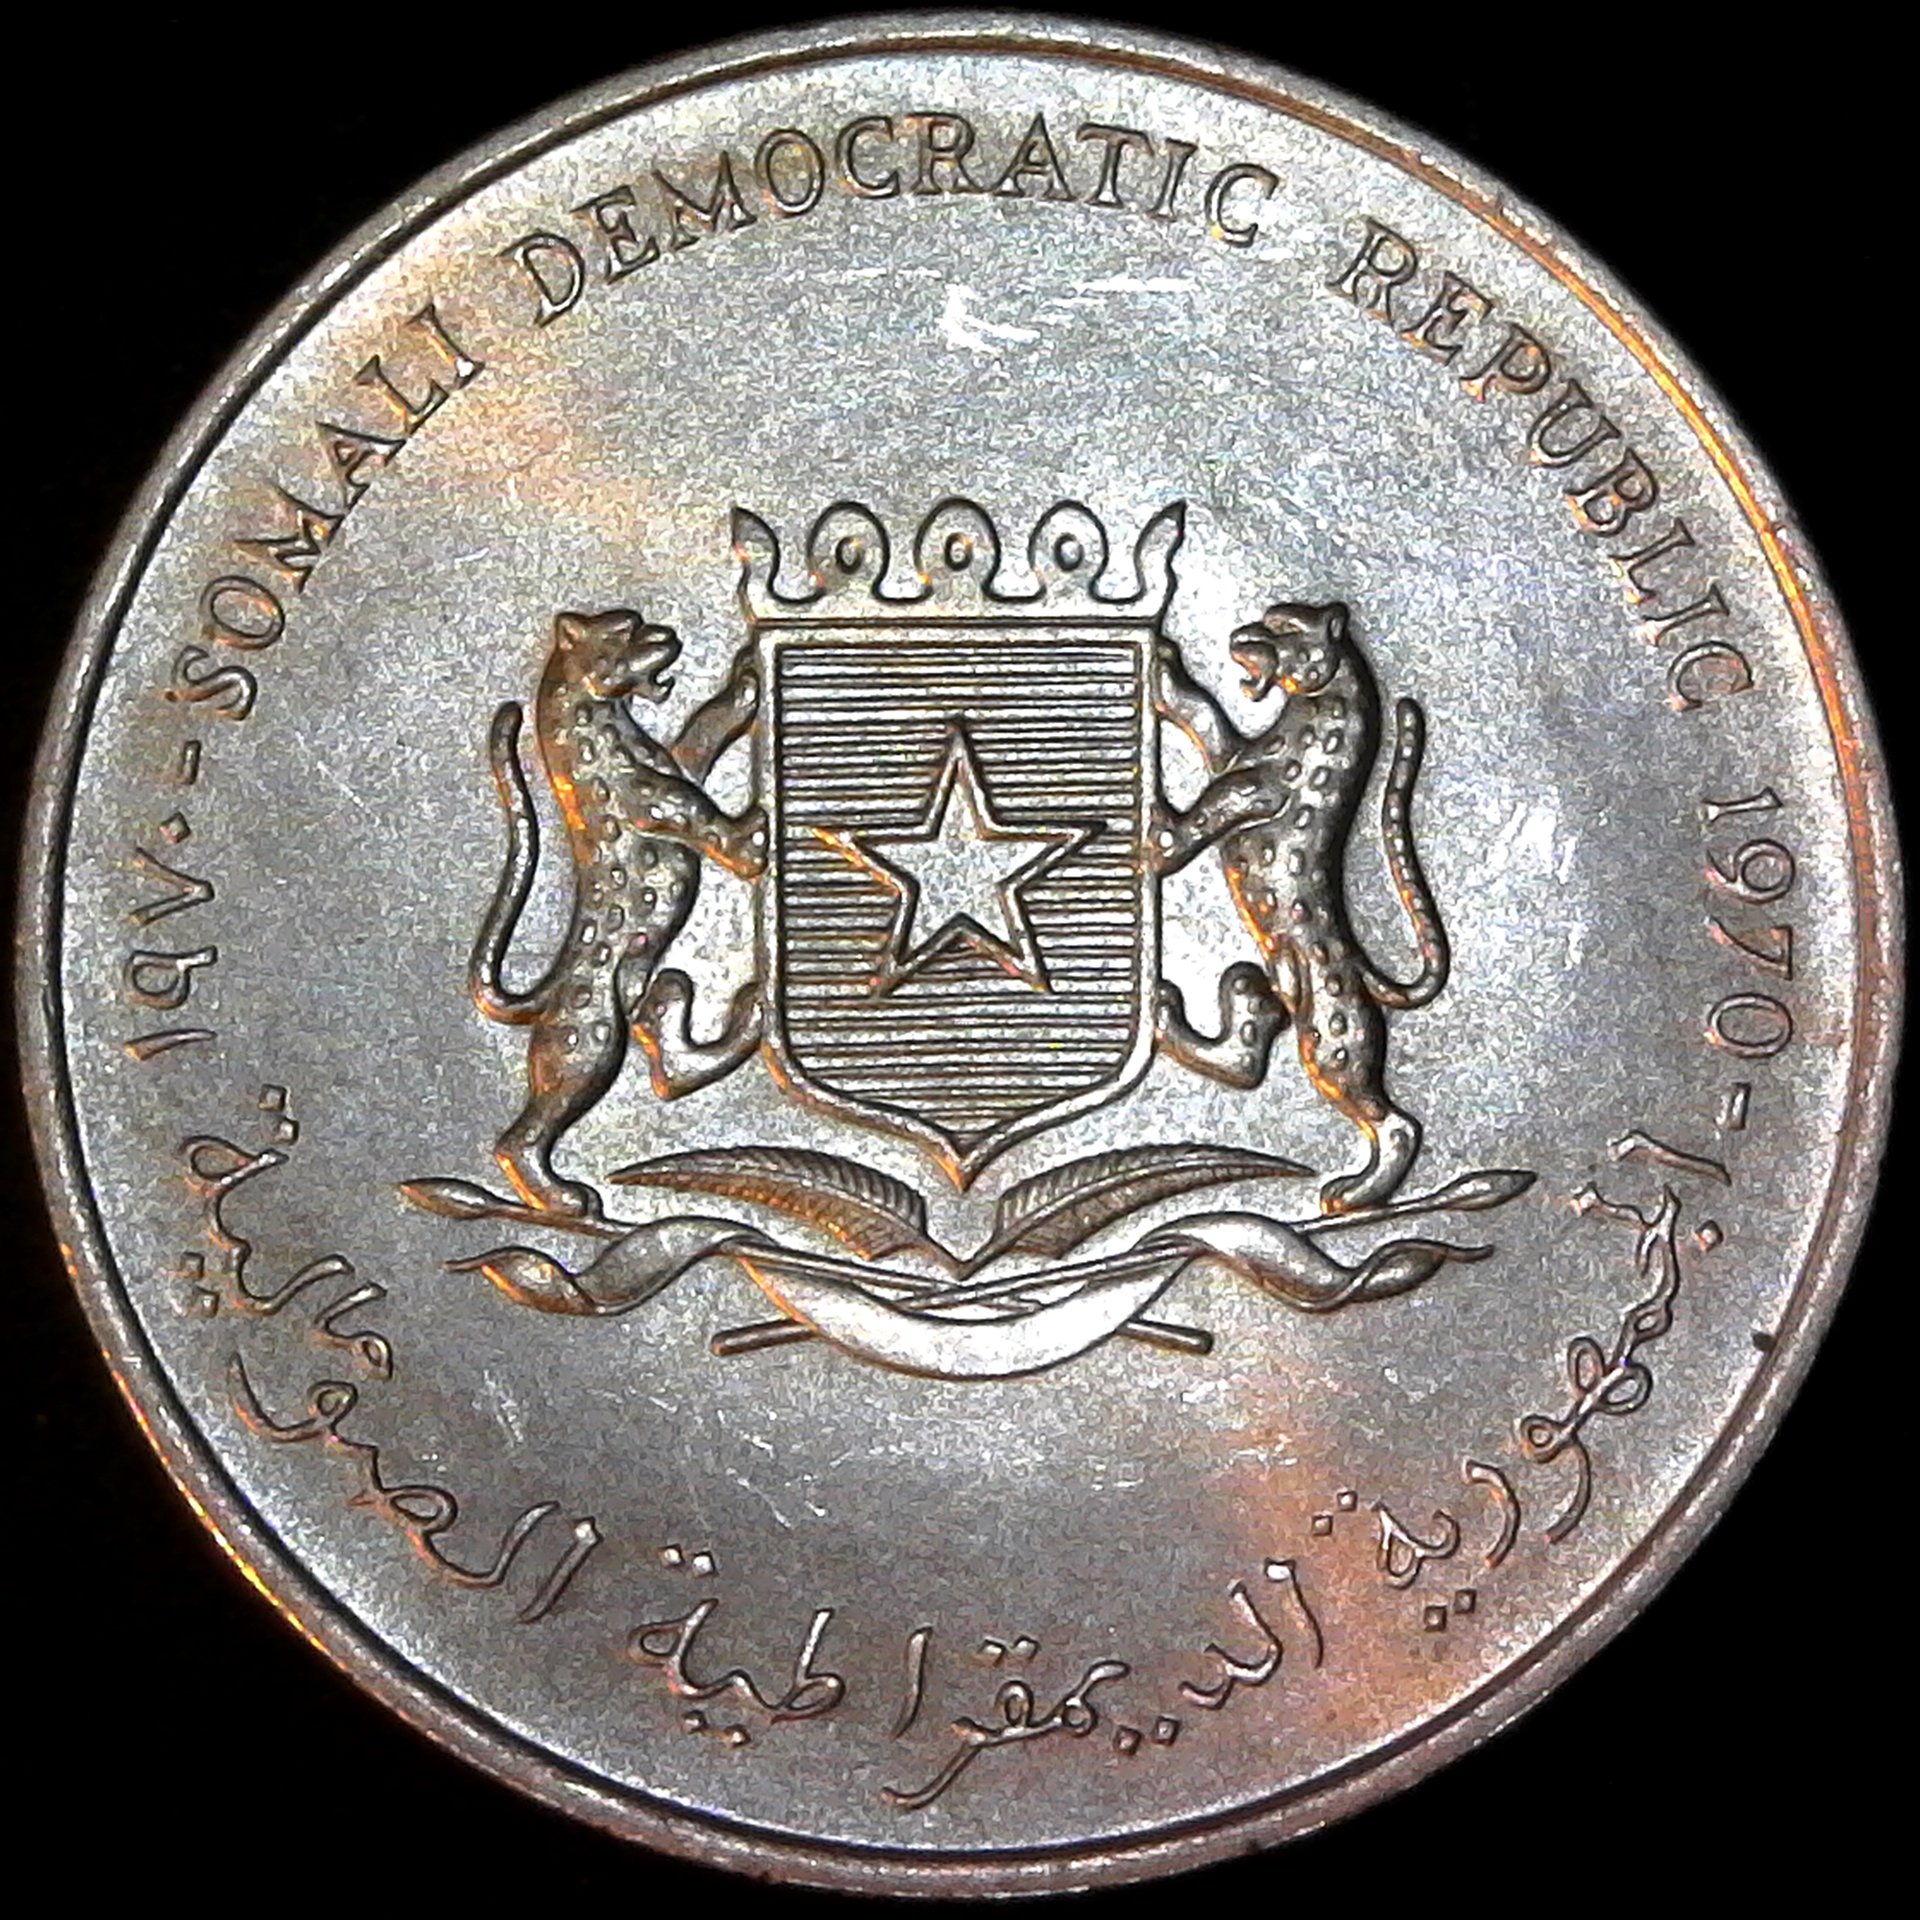 Somalia 5 Shillings 1970 rev.jpg